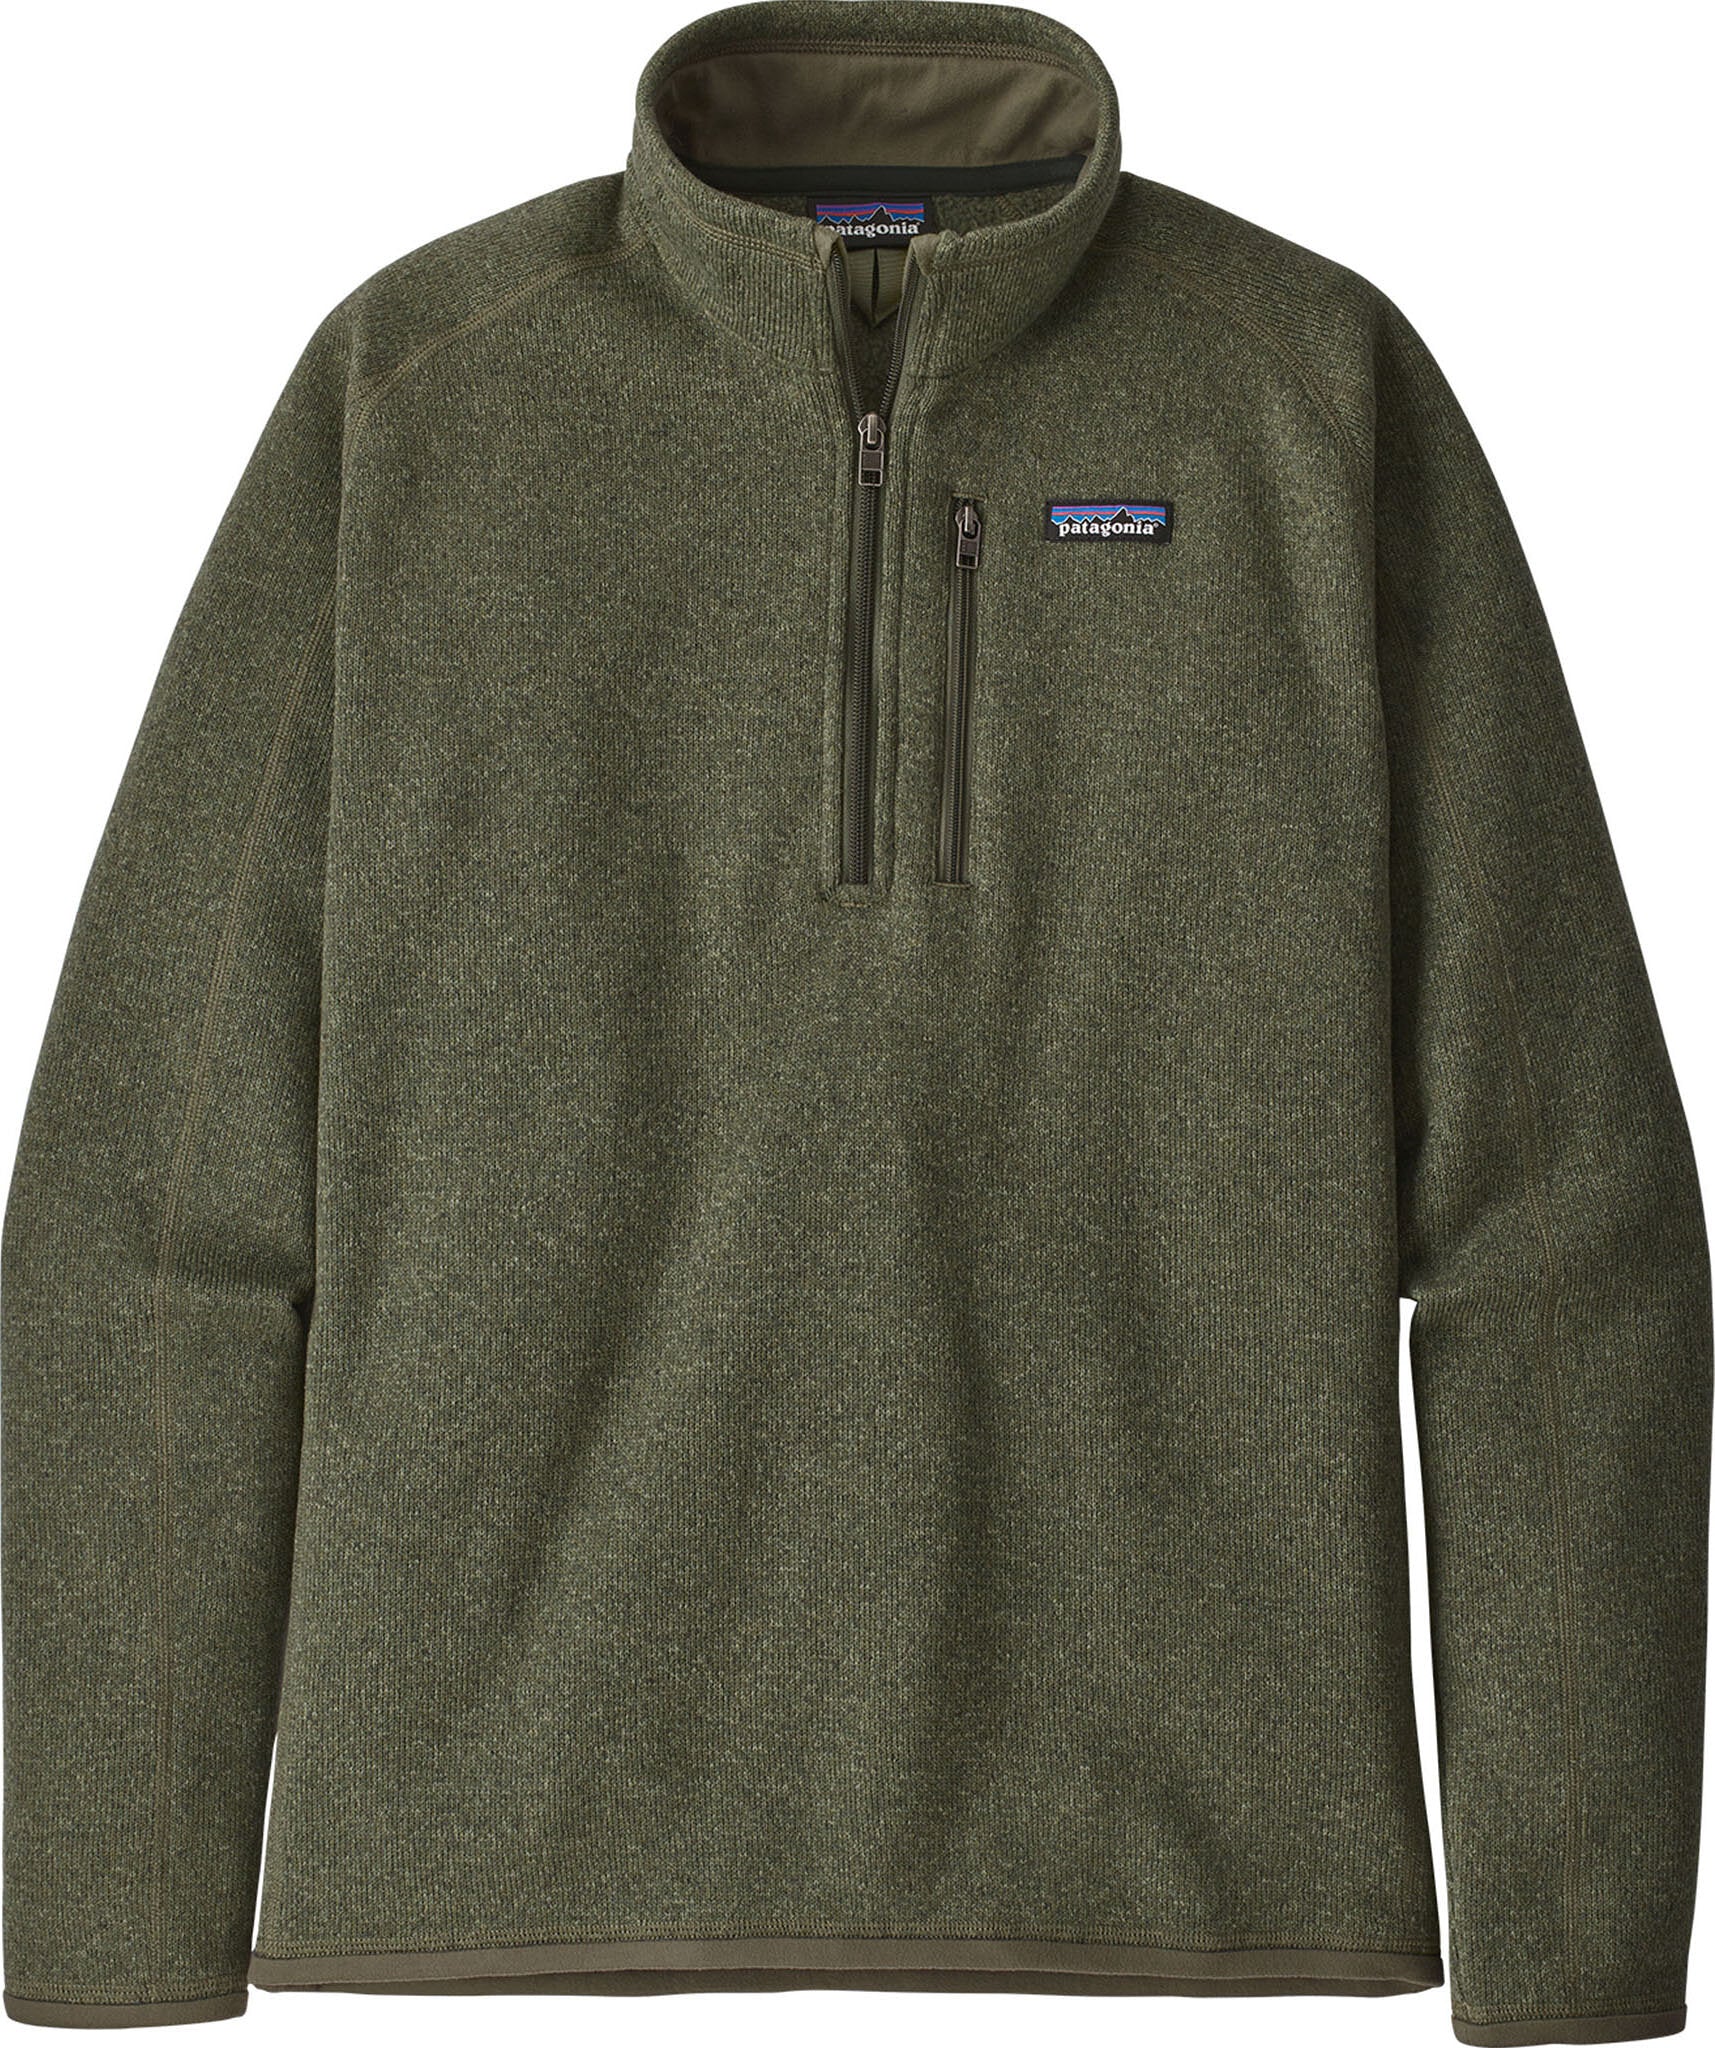 Patagonia Better Sweater 1/4 Zip - Fleece Jumper Men's